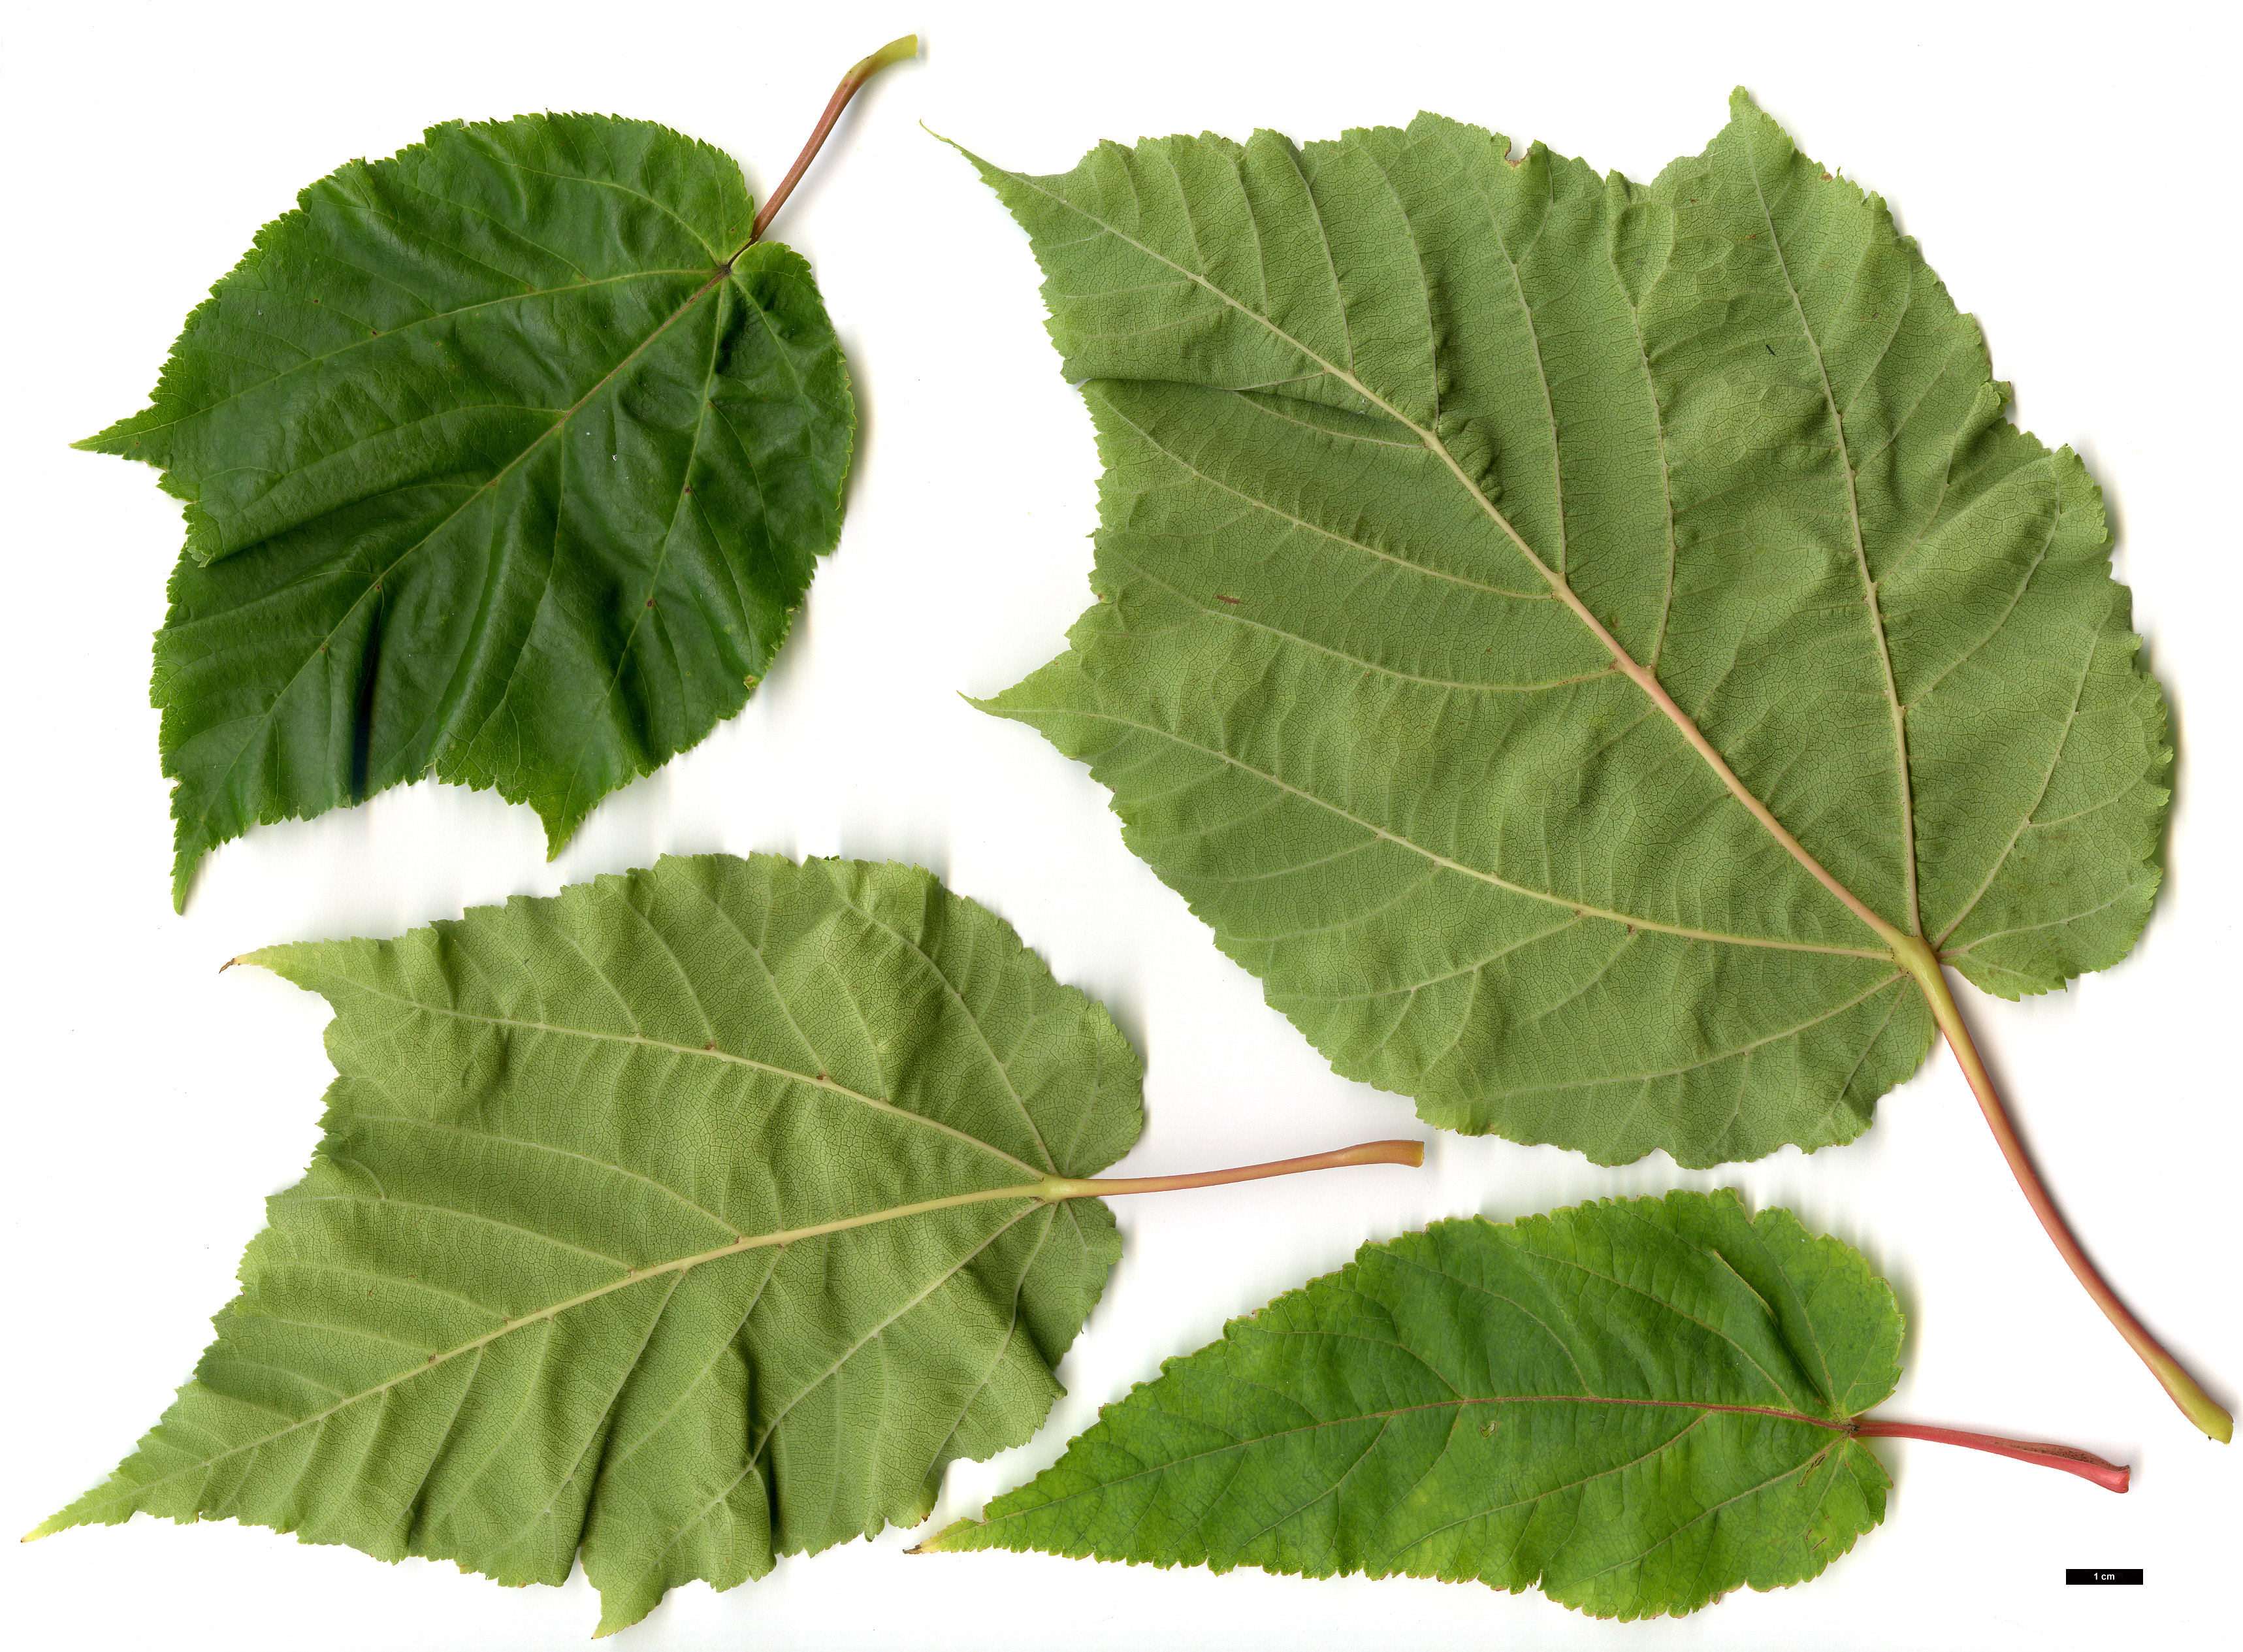 High resolution image: Family: Sapindaceae - Genus: Acer - Taxon: ×conspicuum - SpeciesSub: 'Phoenix' (A.davidii × A.pensylvanicum)